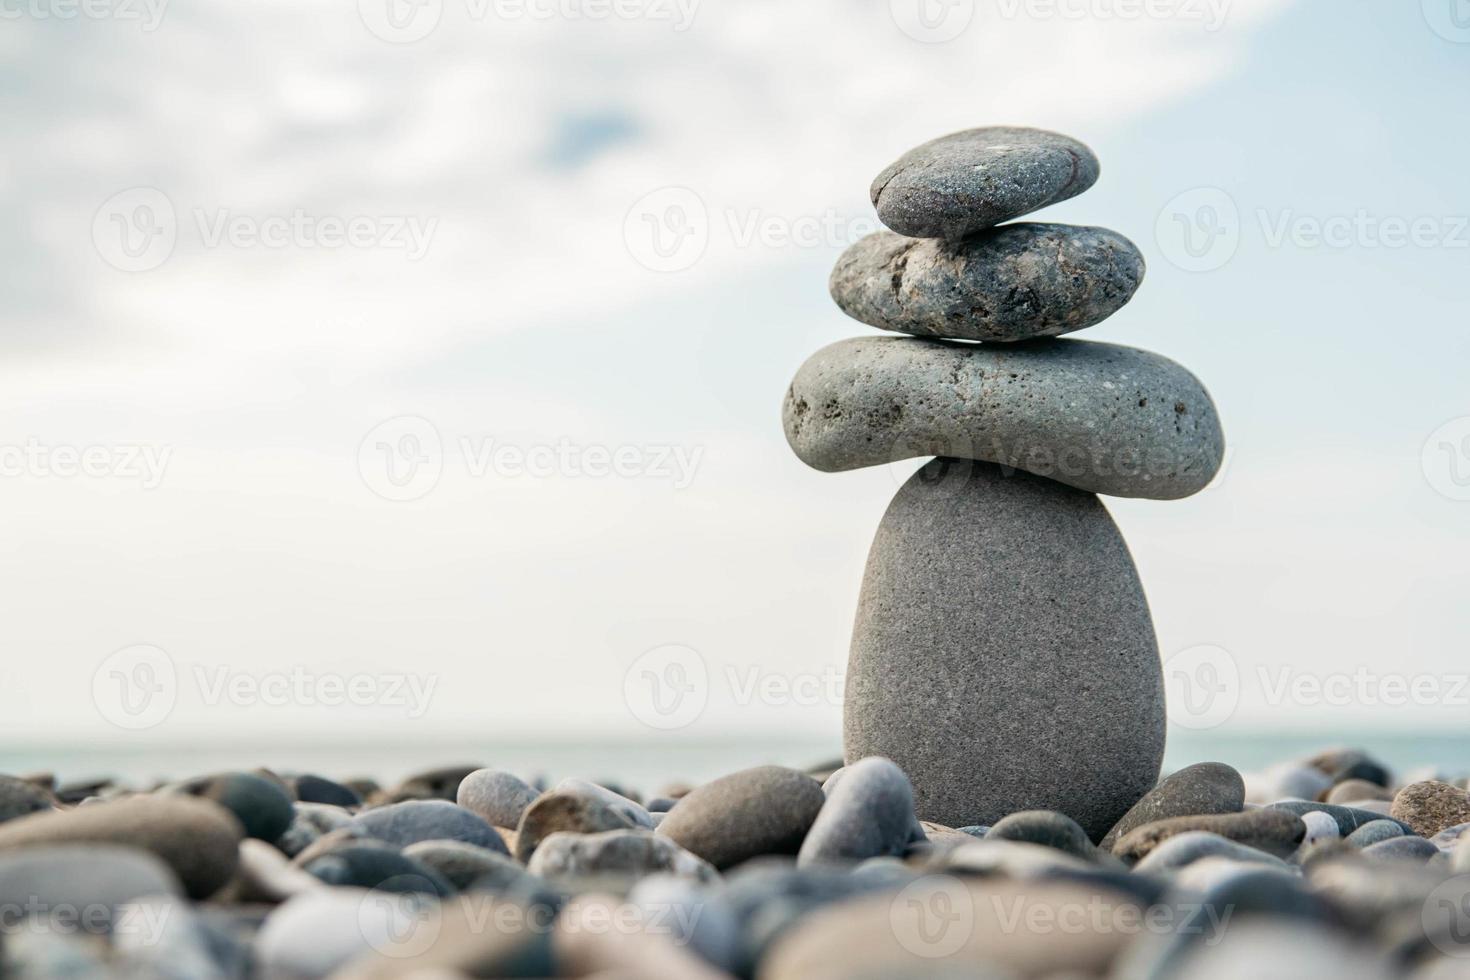 stenen piramide op kiezelstrand symboliseert stabiliteit, zen, harmonie, balans. concept van vrijheid ontspanning foto